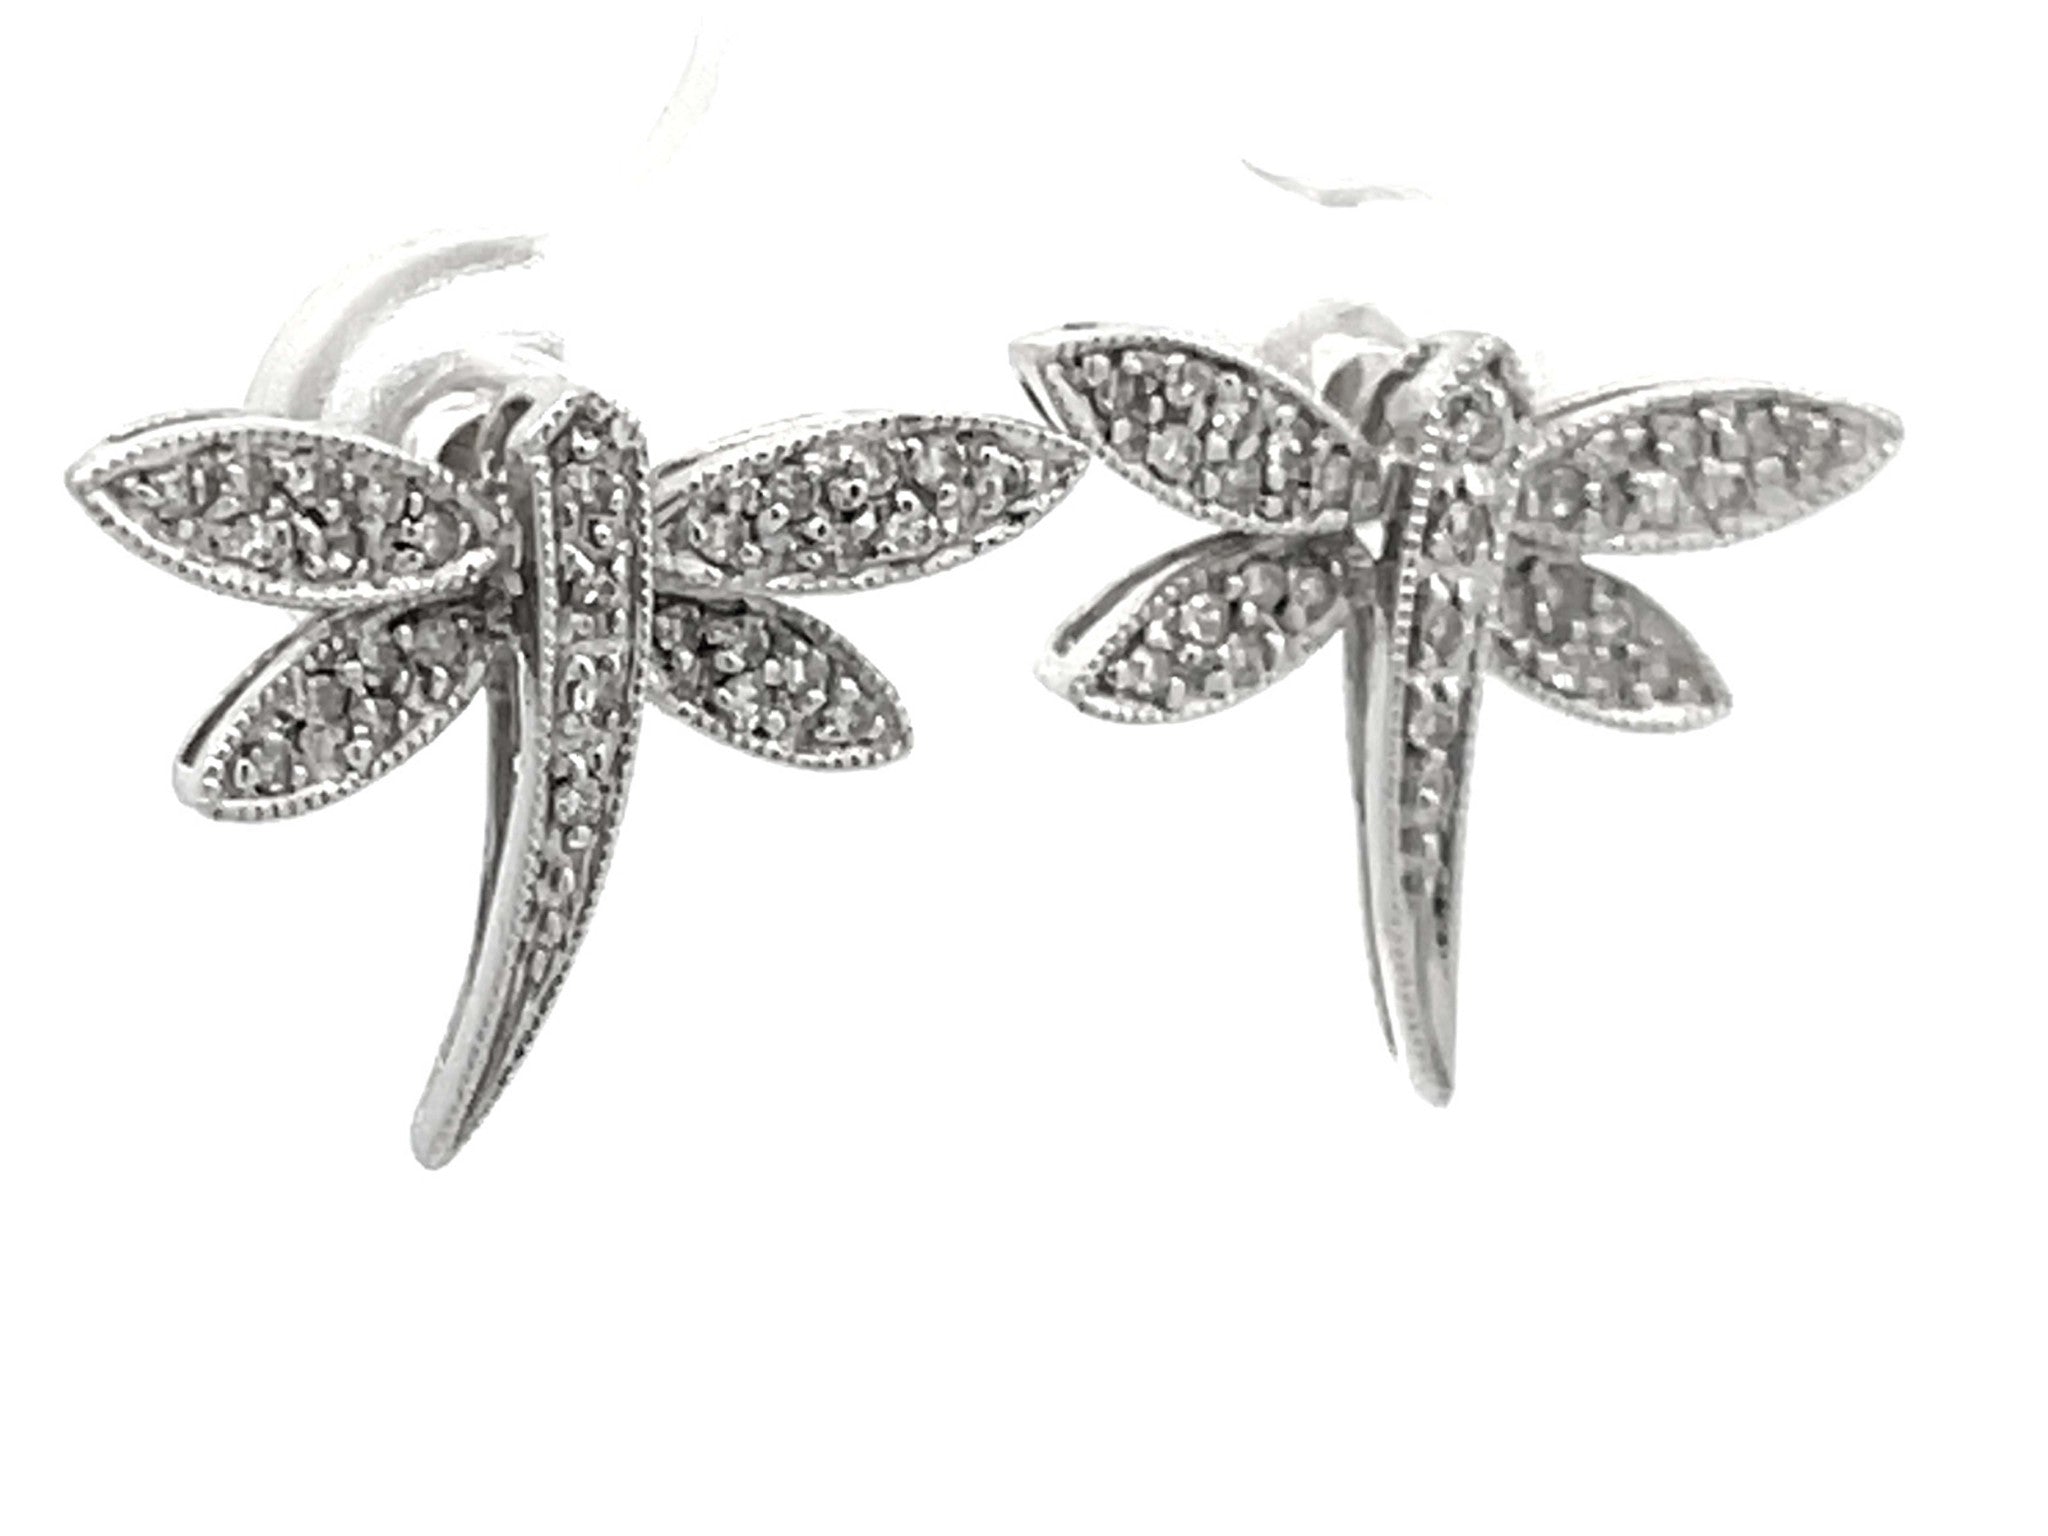 Diamond Dragonfly Earrings in 14k White Gold